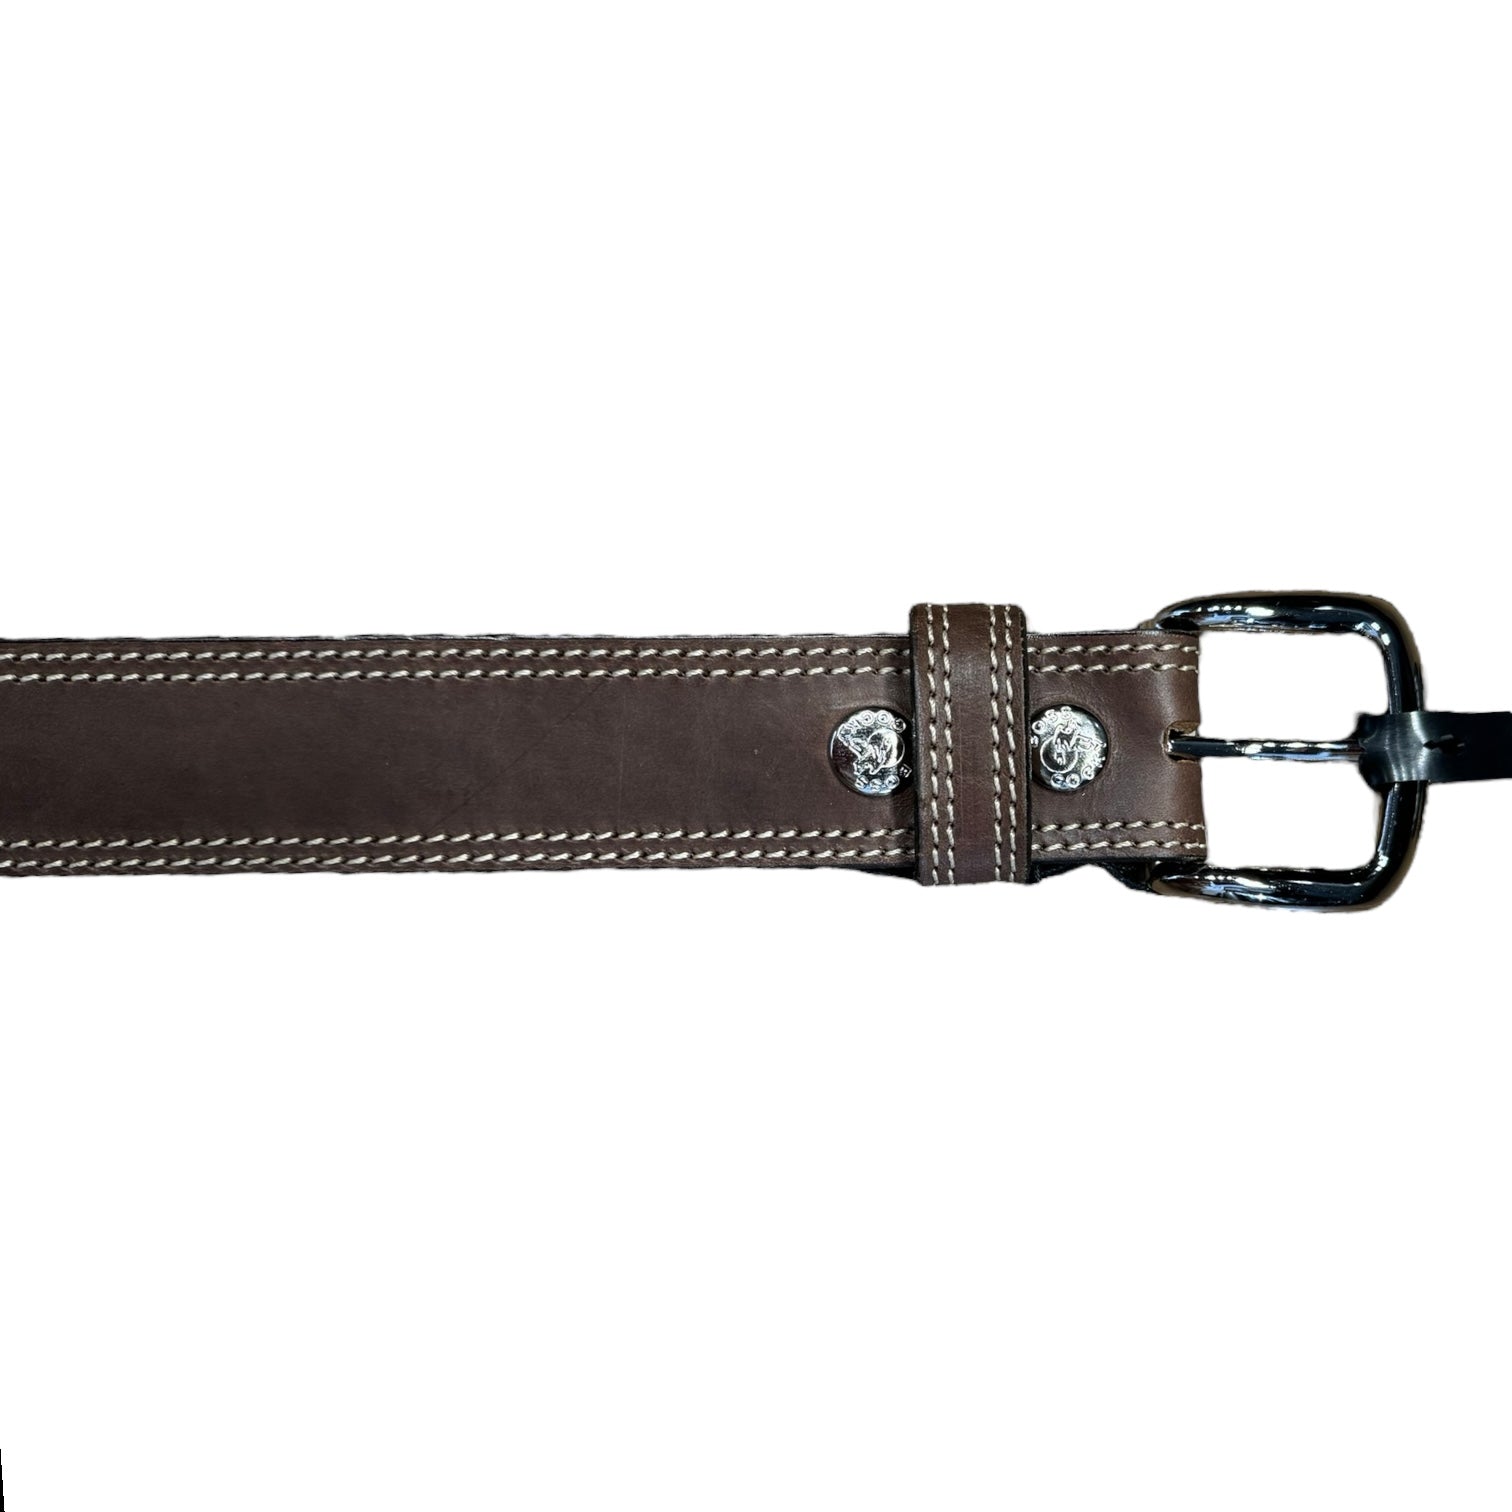 40mm Stitched Leather Belt - Vintage Brown